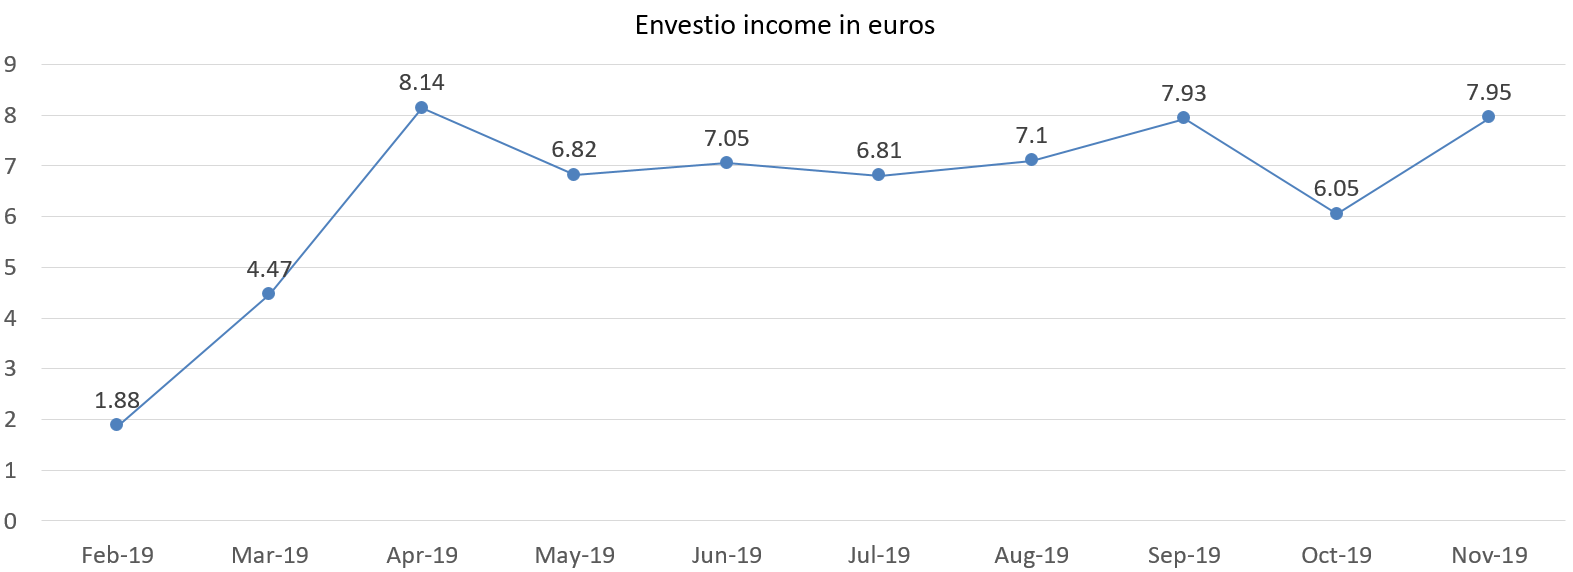 Envestio interest income in euros november 2019